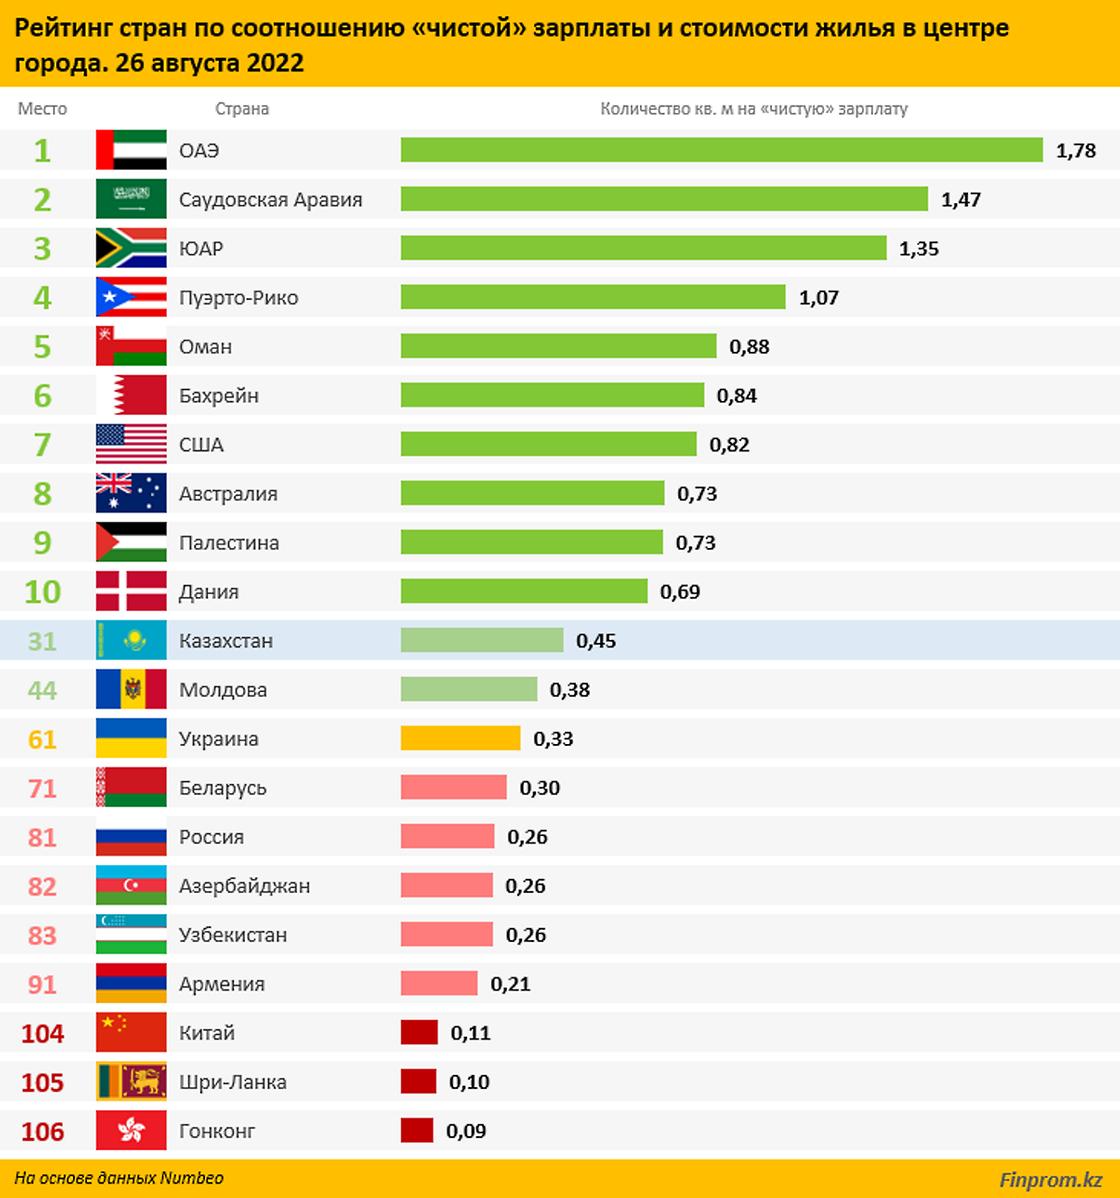 По уровню доступности жилья Казахстан находится на 31 месте